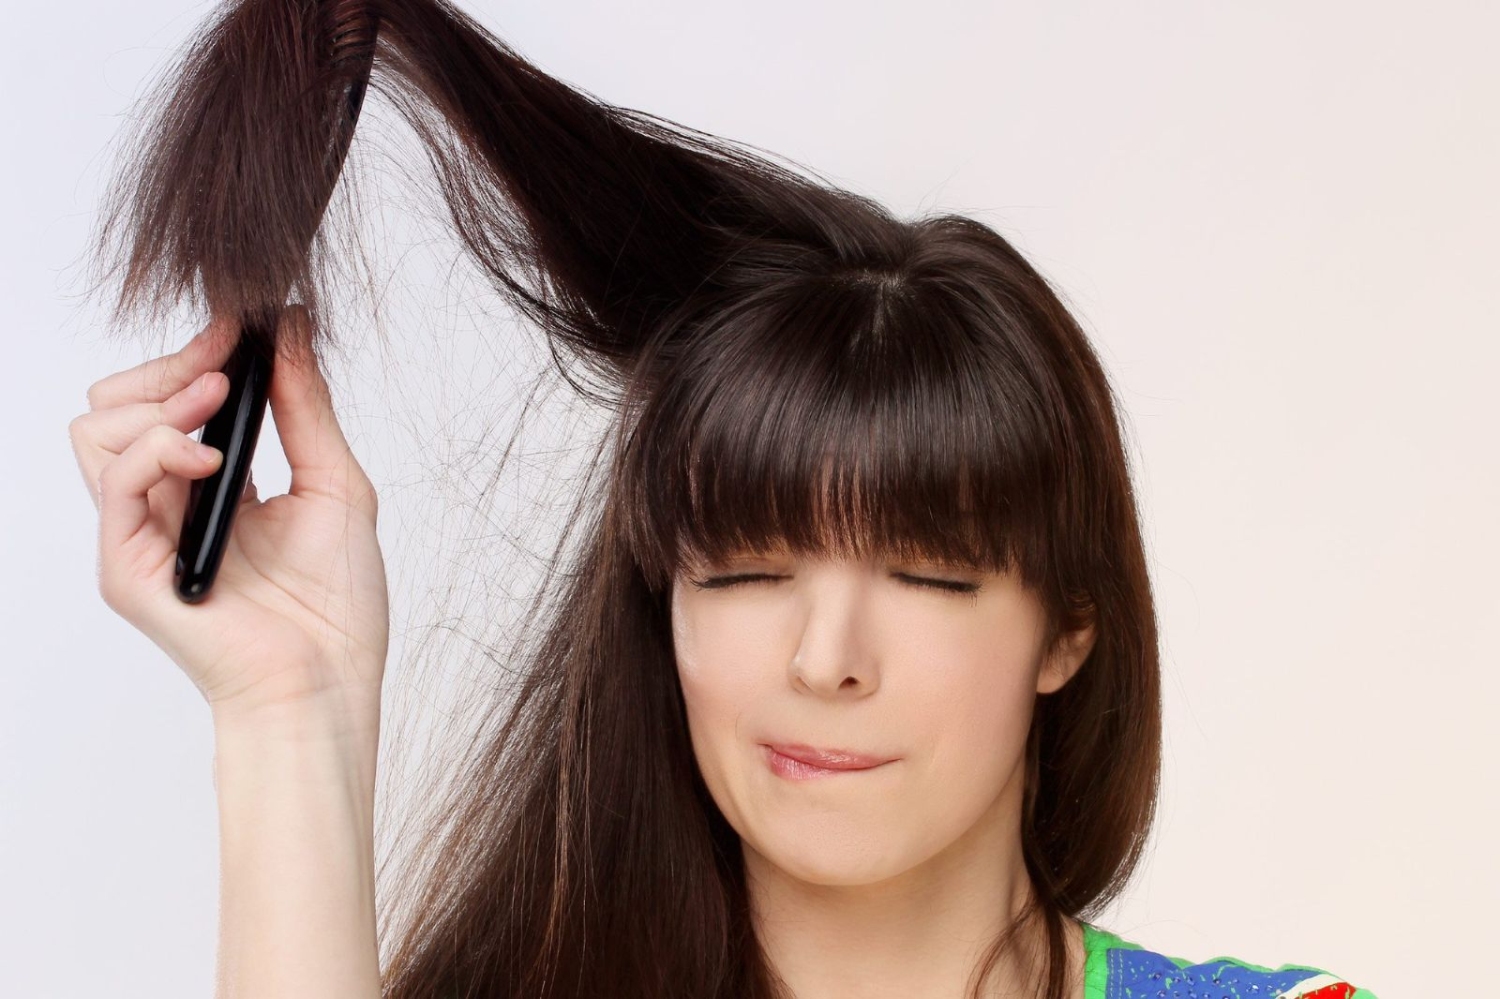 Chải tóc nhẹ nhàng là cách giúp suôn mượt và giảm gãy rụng